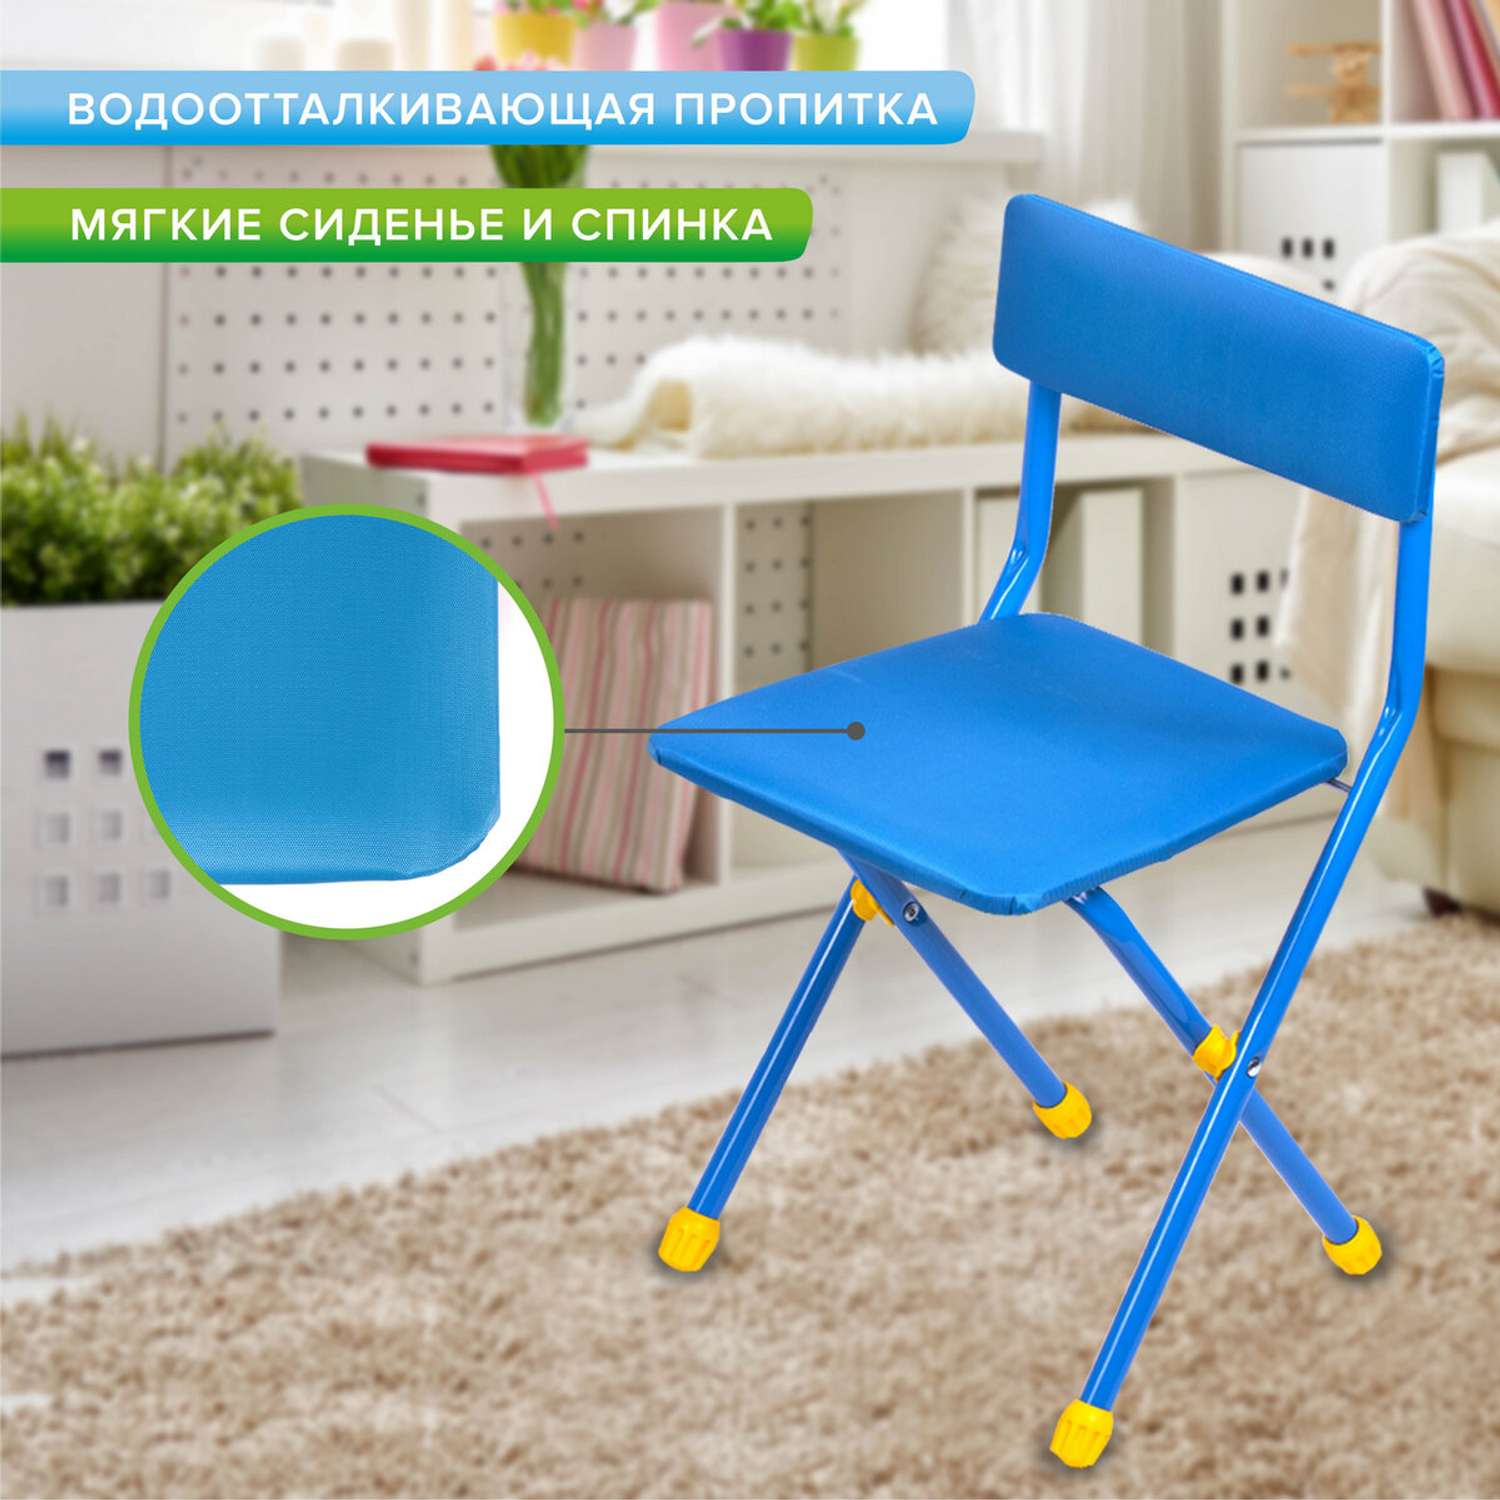 Столик и стульчик детский Brauberg игровой голубой Космос - фото 7